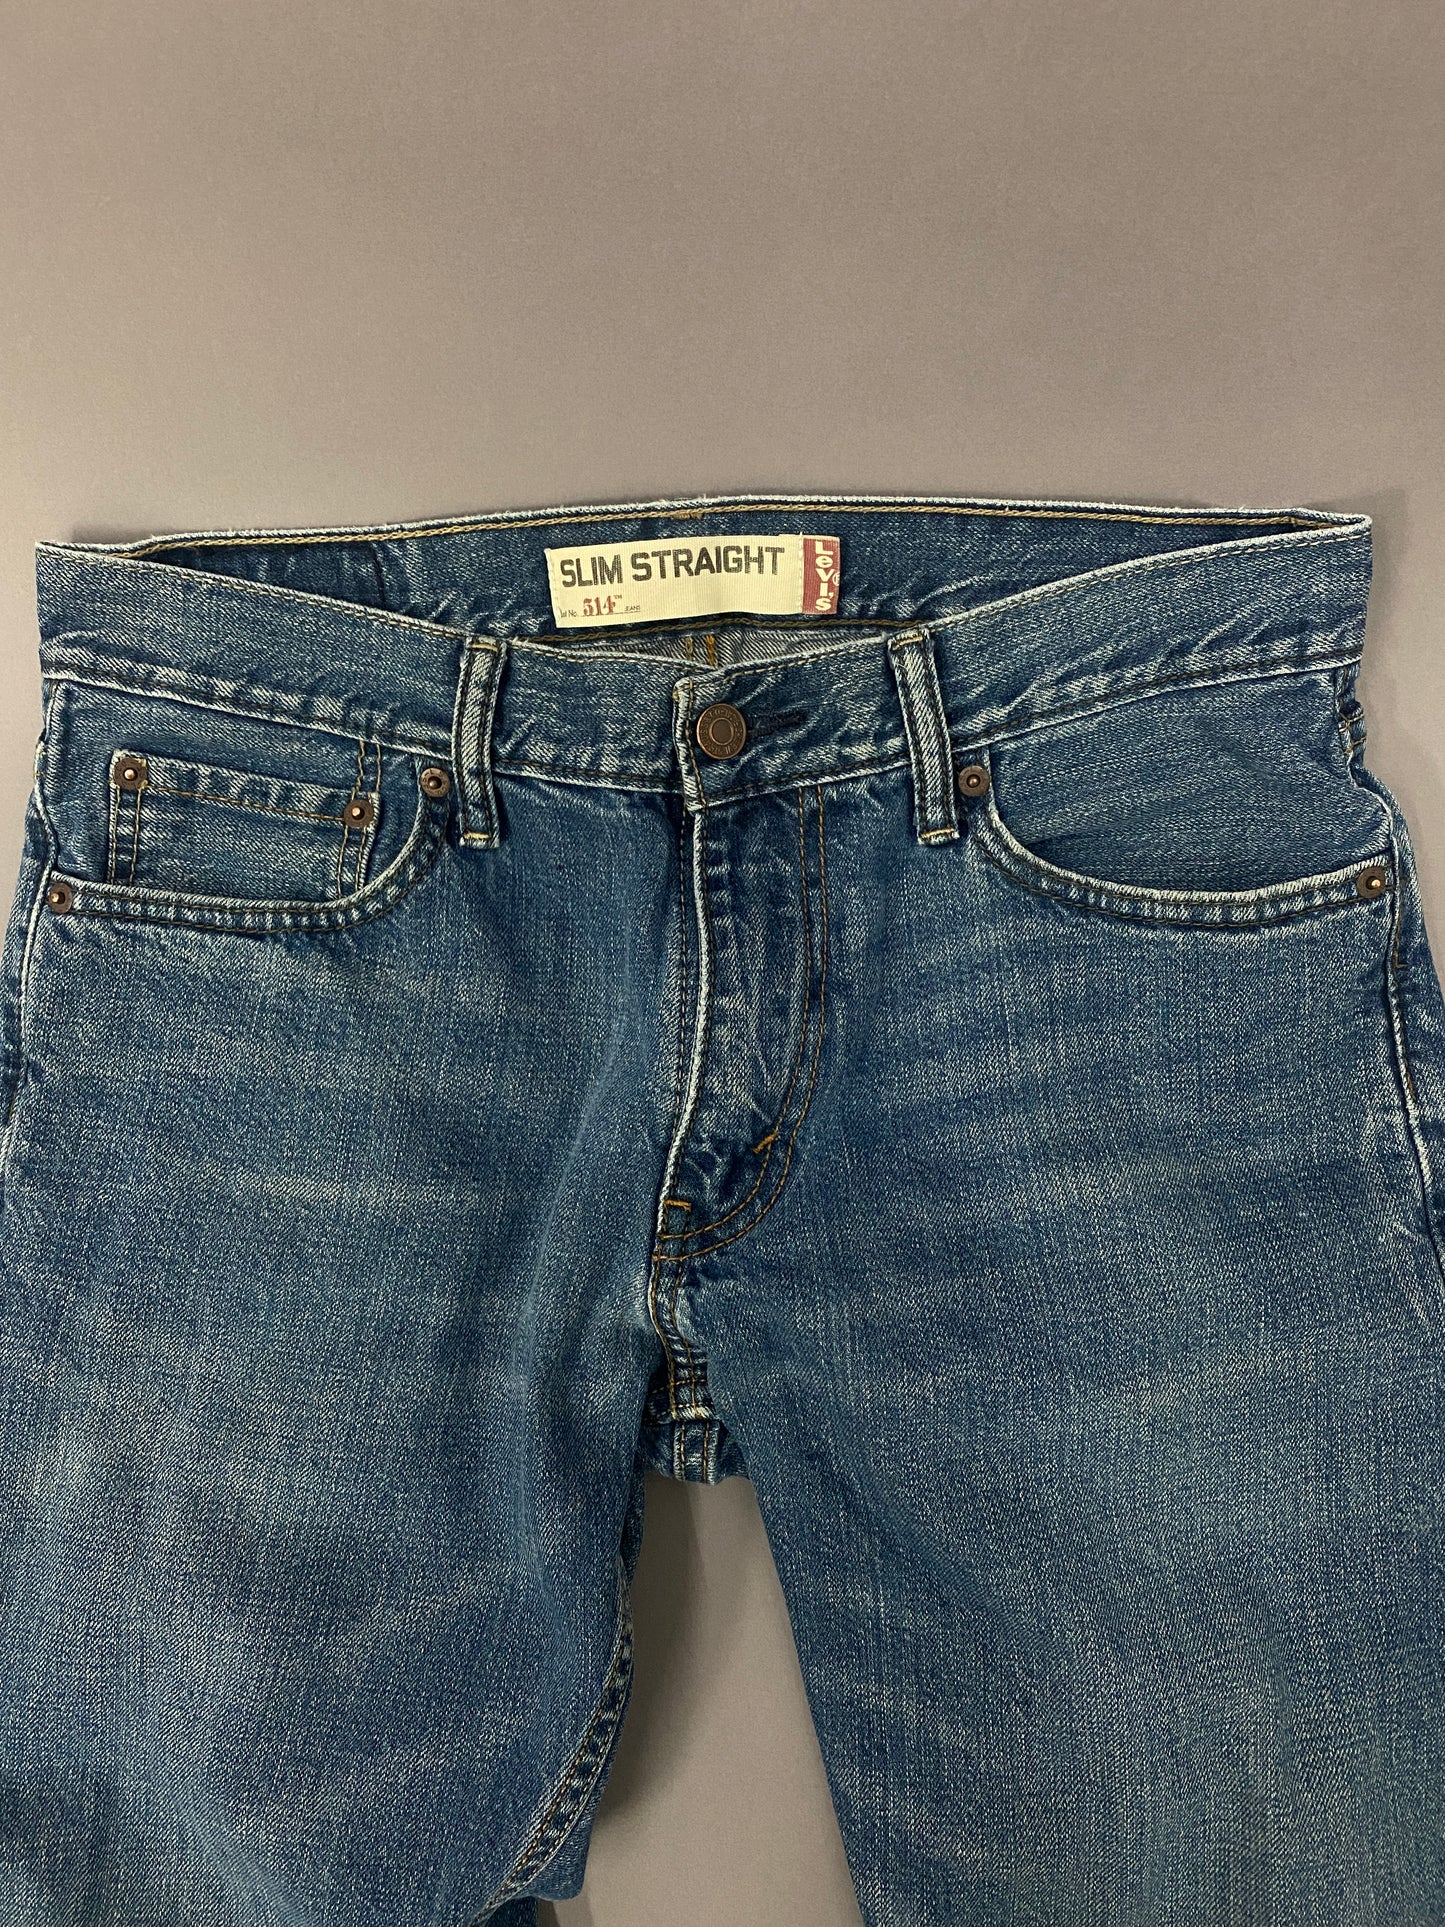 Jeans Levi's 514 - 30 x 30